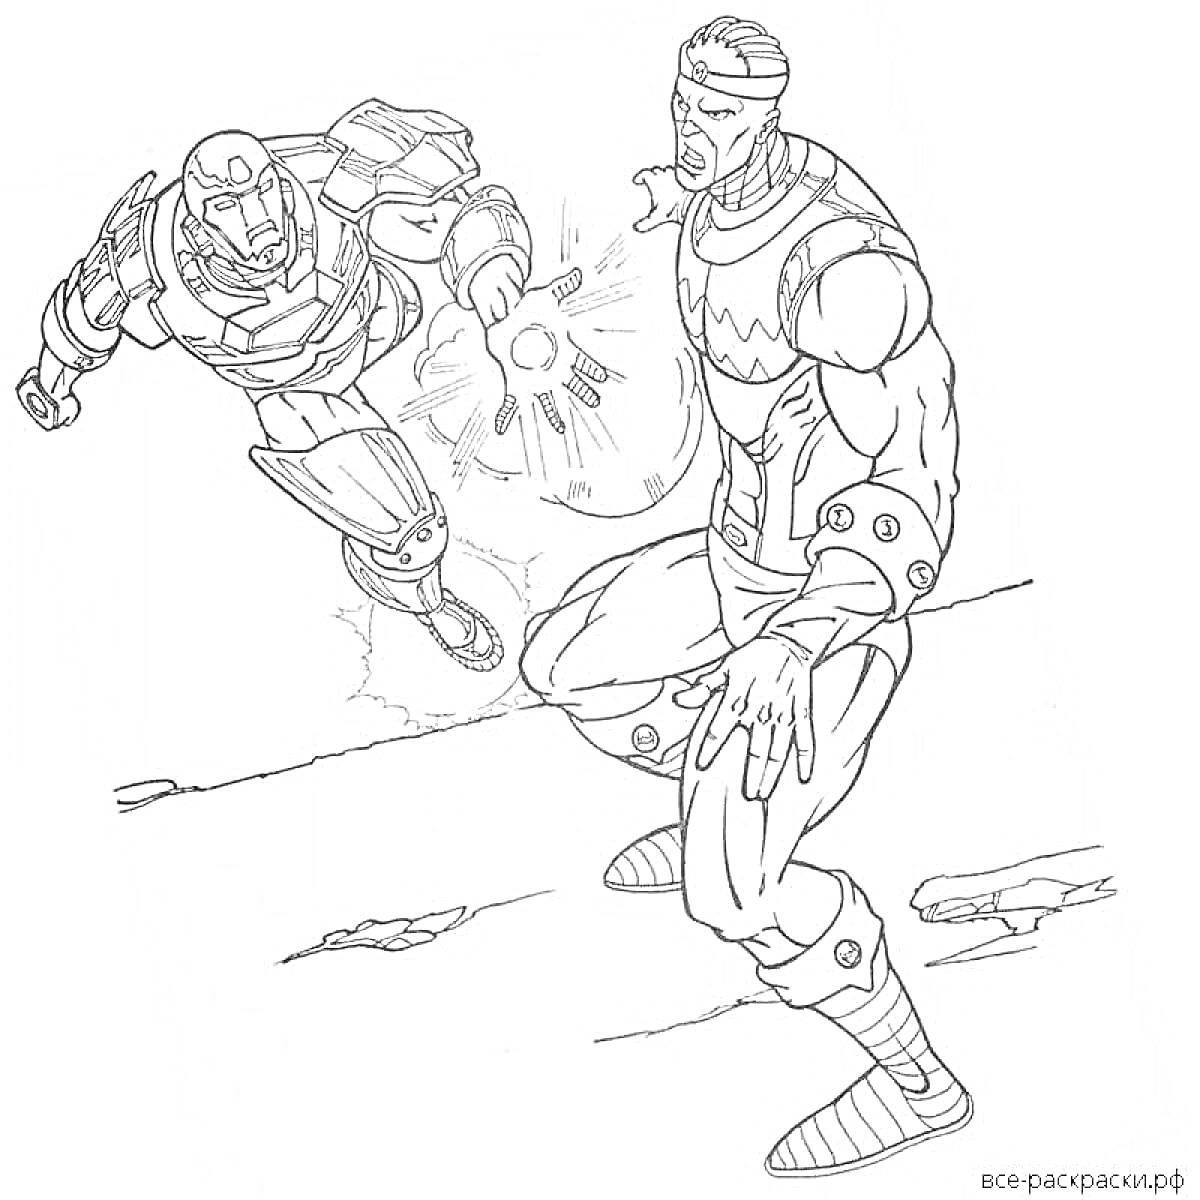 Раскраска Драка двух супергероев - один летящий в железном костюме с атакующим лазером, другой на земле в боевой позе.